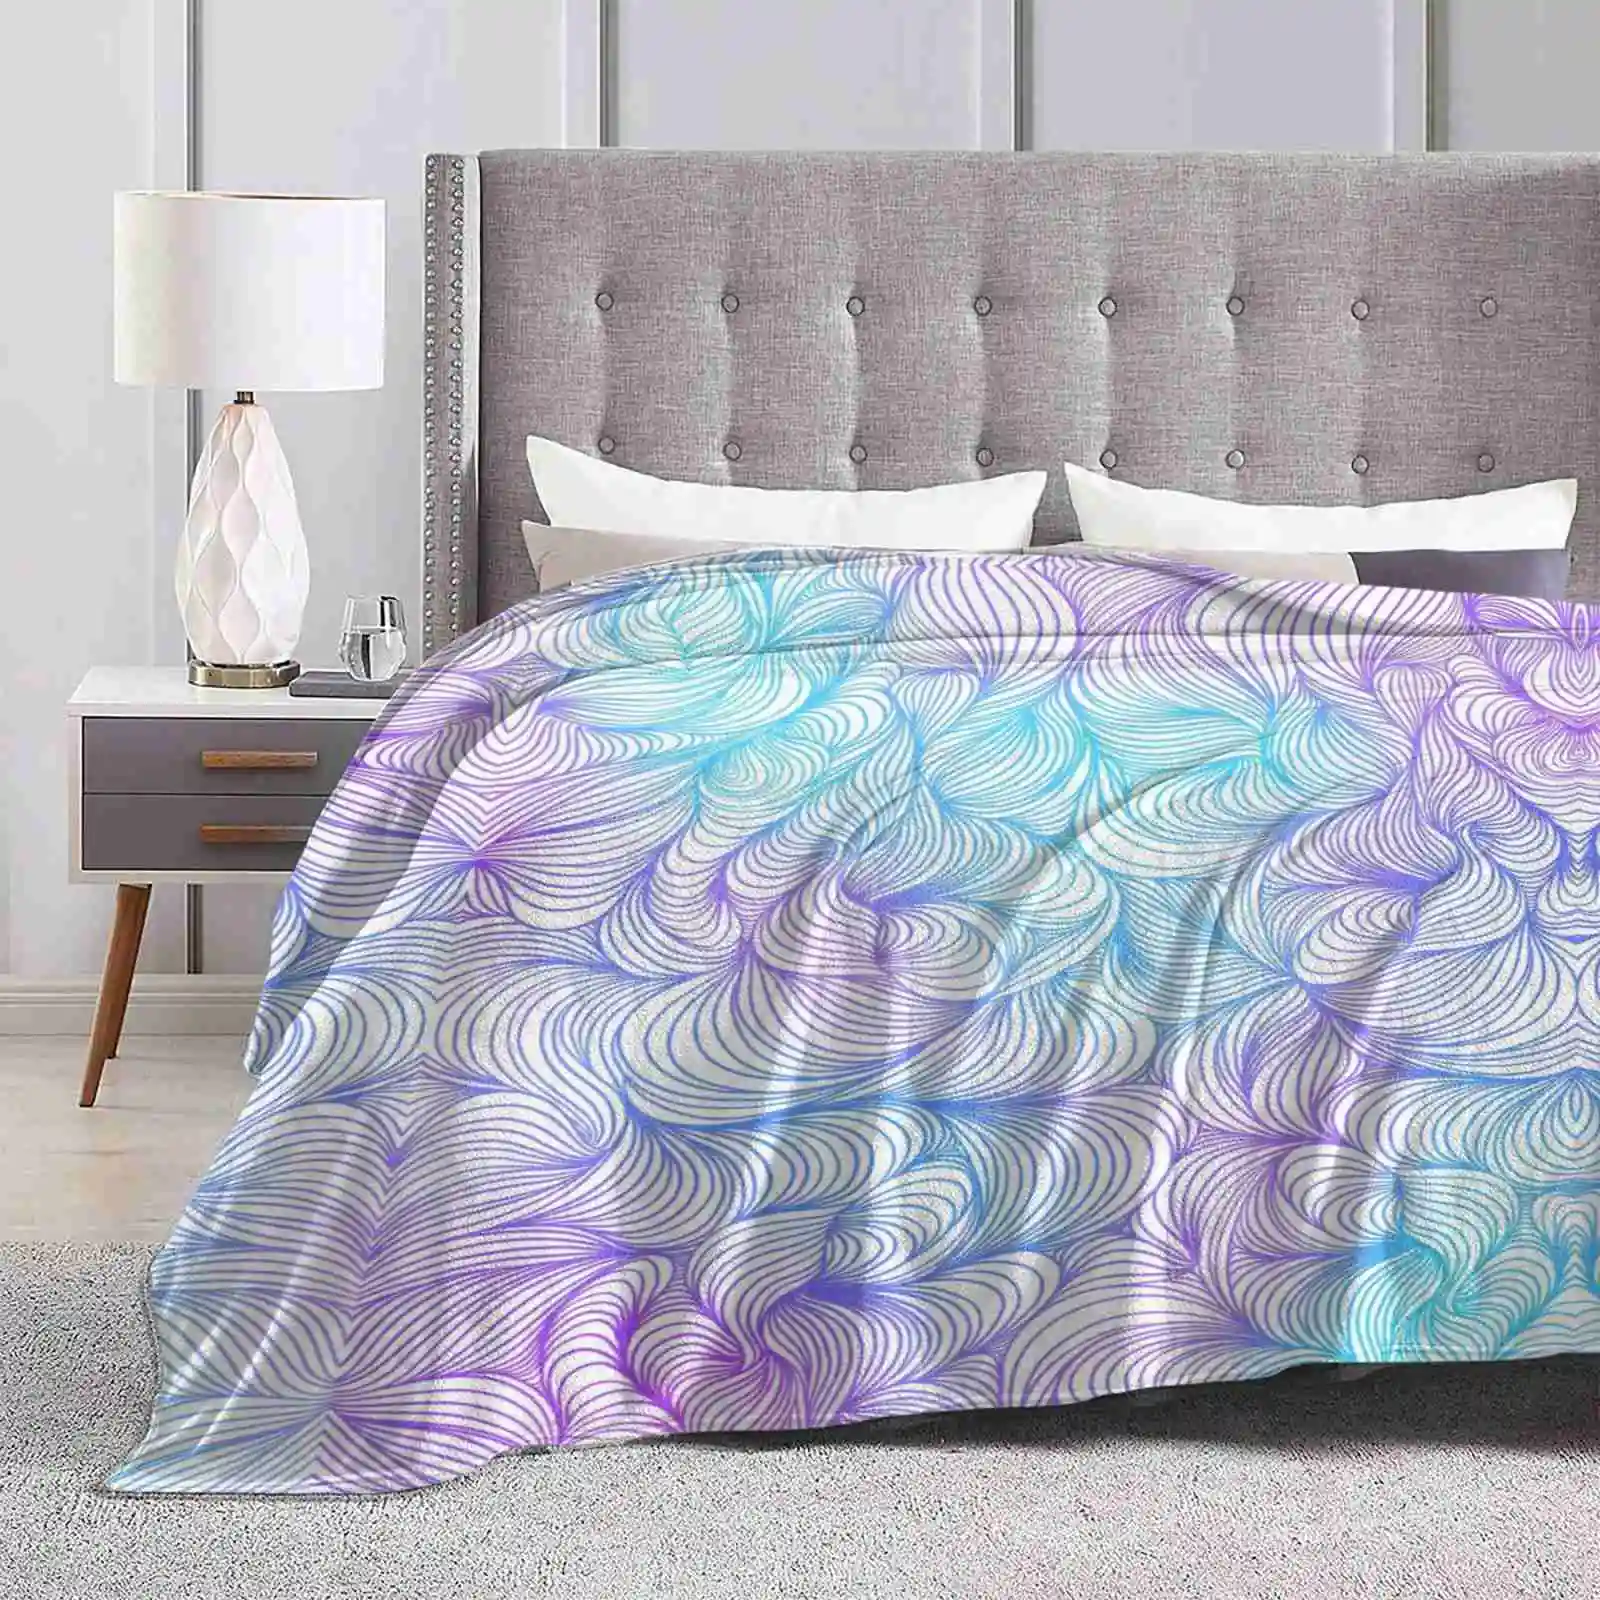 

Сине-фиолетовые супер теплые мягкие одеяла для плавания на диван/кровать/Путешествие океанская вода красивые волны плавки Триппи уникальные для девушек